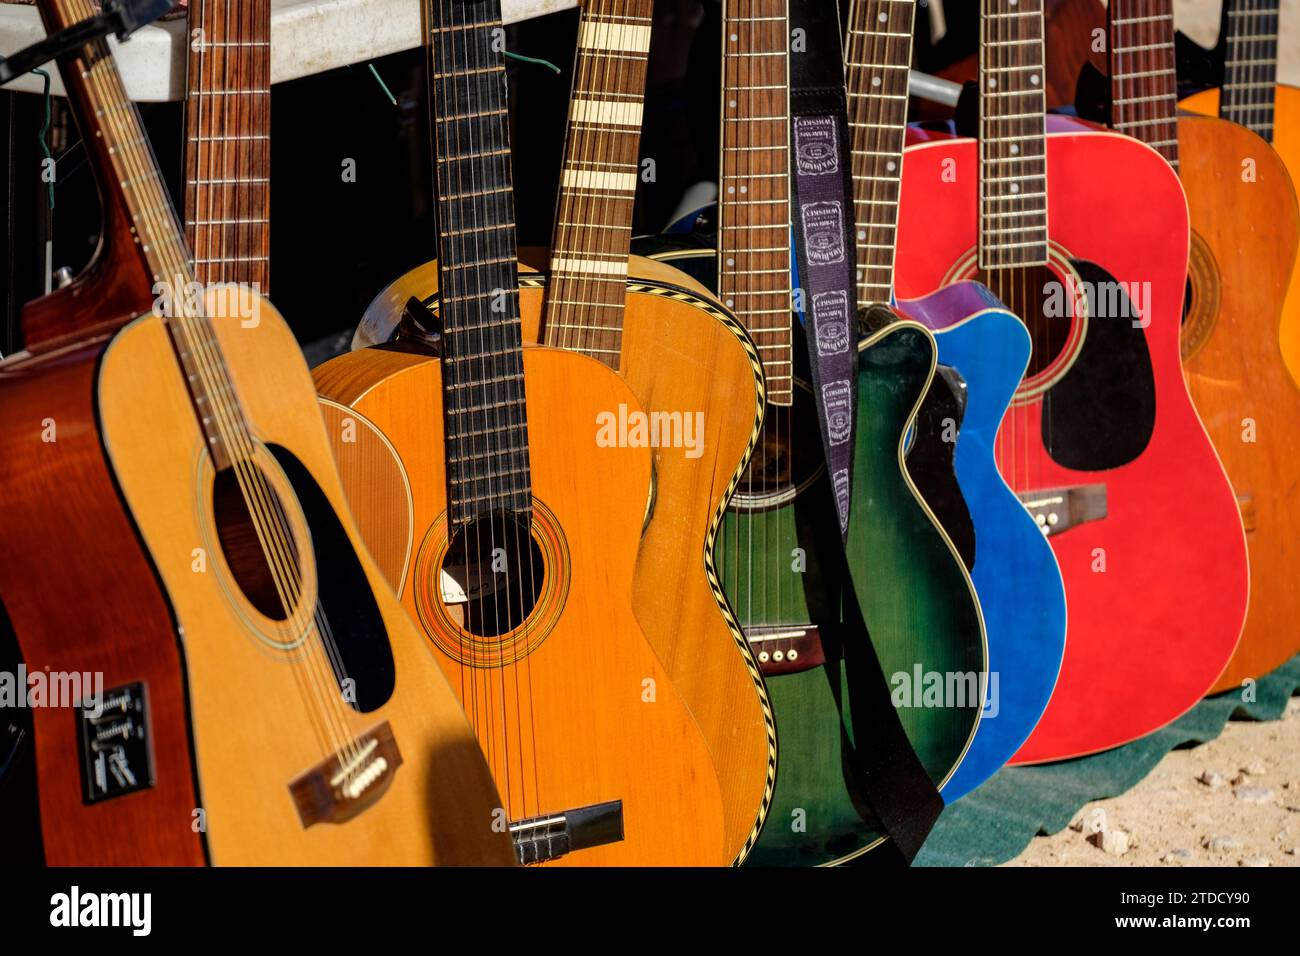 guitarras, Mercado de antigüedades y de segunda mano de Son Bugadelles, Calvià, Mallorca, balearic islands, Spain Stock Photo